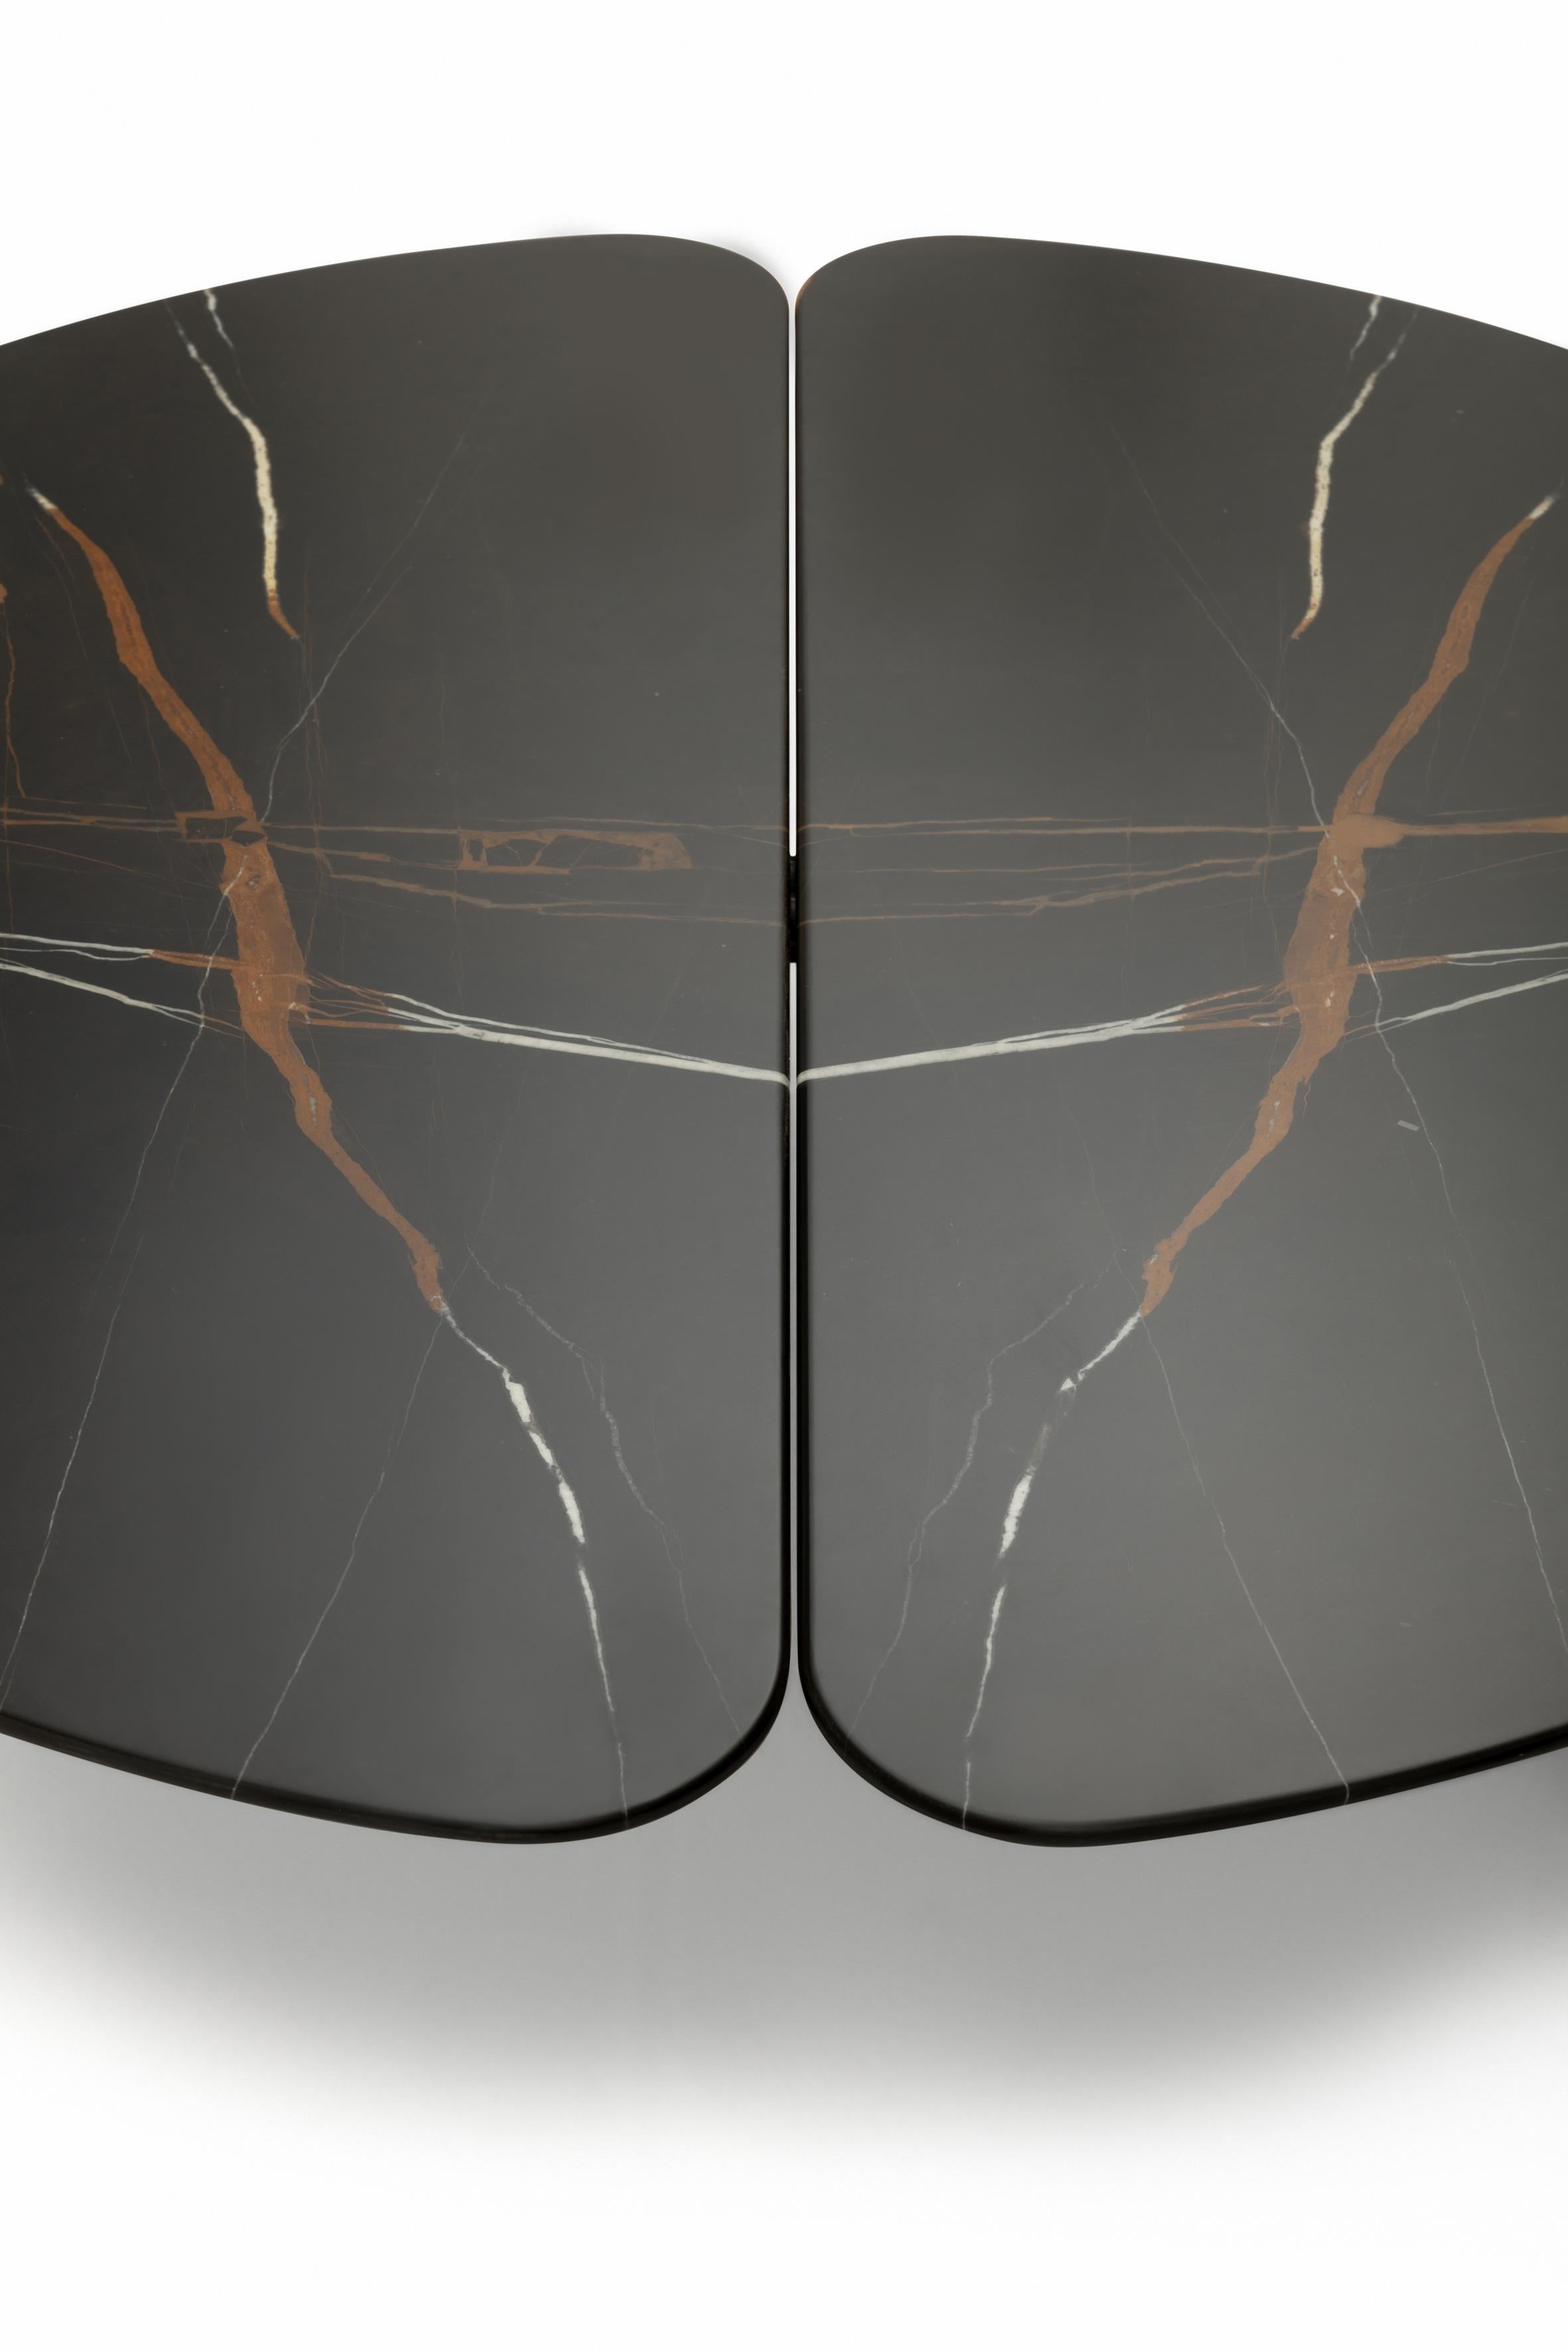 italien Petite table Zanotta Graphium avec plateau en marbre Sahara Noir et cadre en acier noir en vente